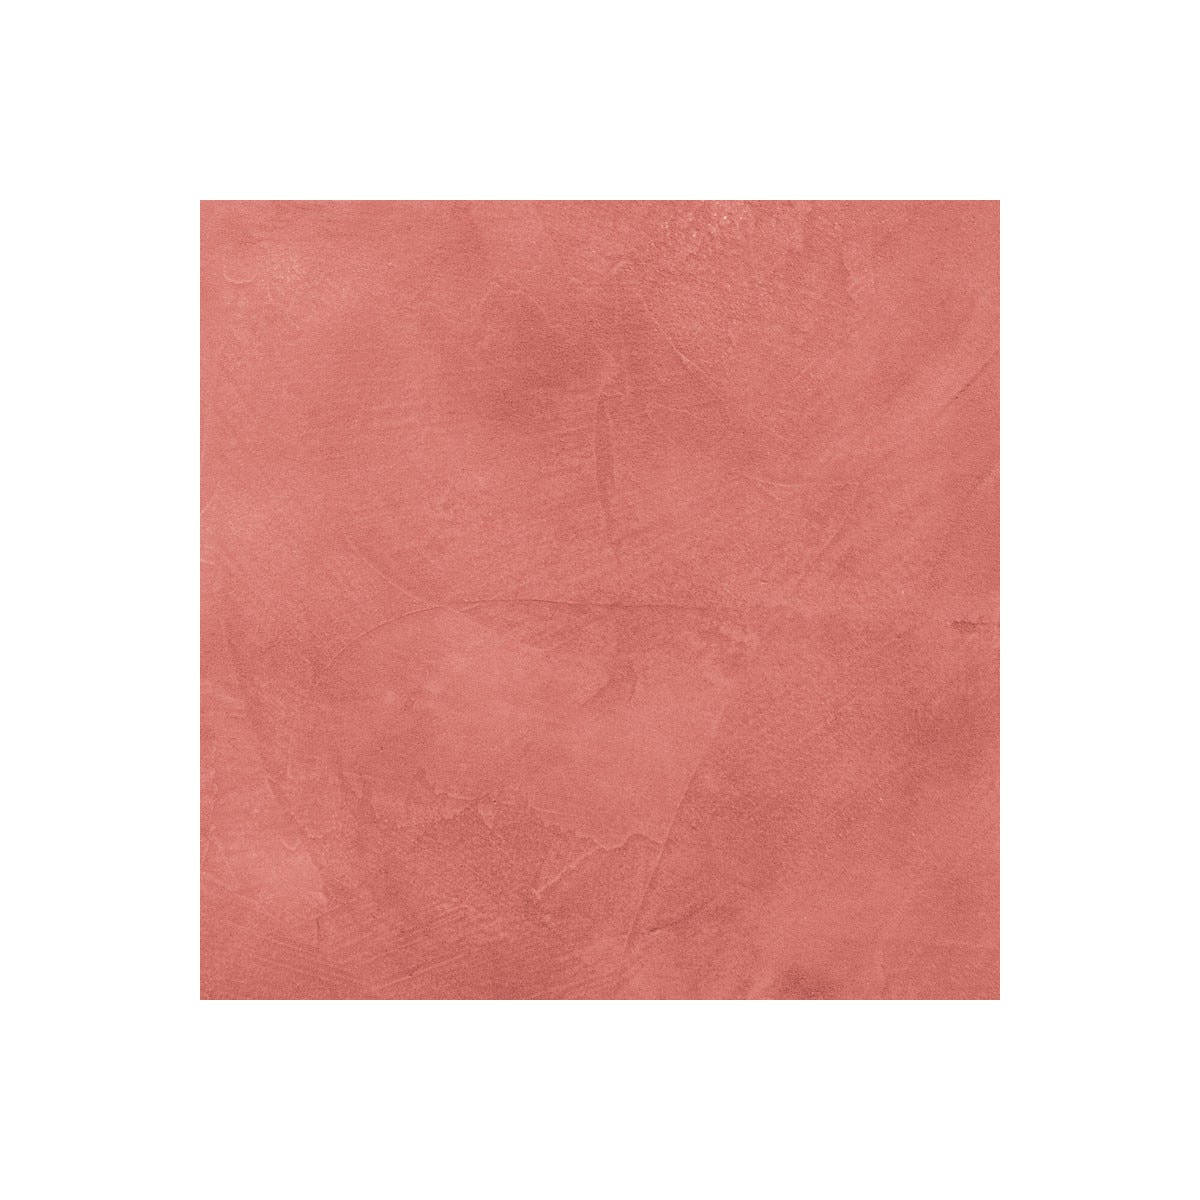 Béton Ciré Sol en - Primaire et vernis de finition inclus - 2 m² (en 2 couches) - Papaye Rose Orange - ARCANE INDUSTRIES 1